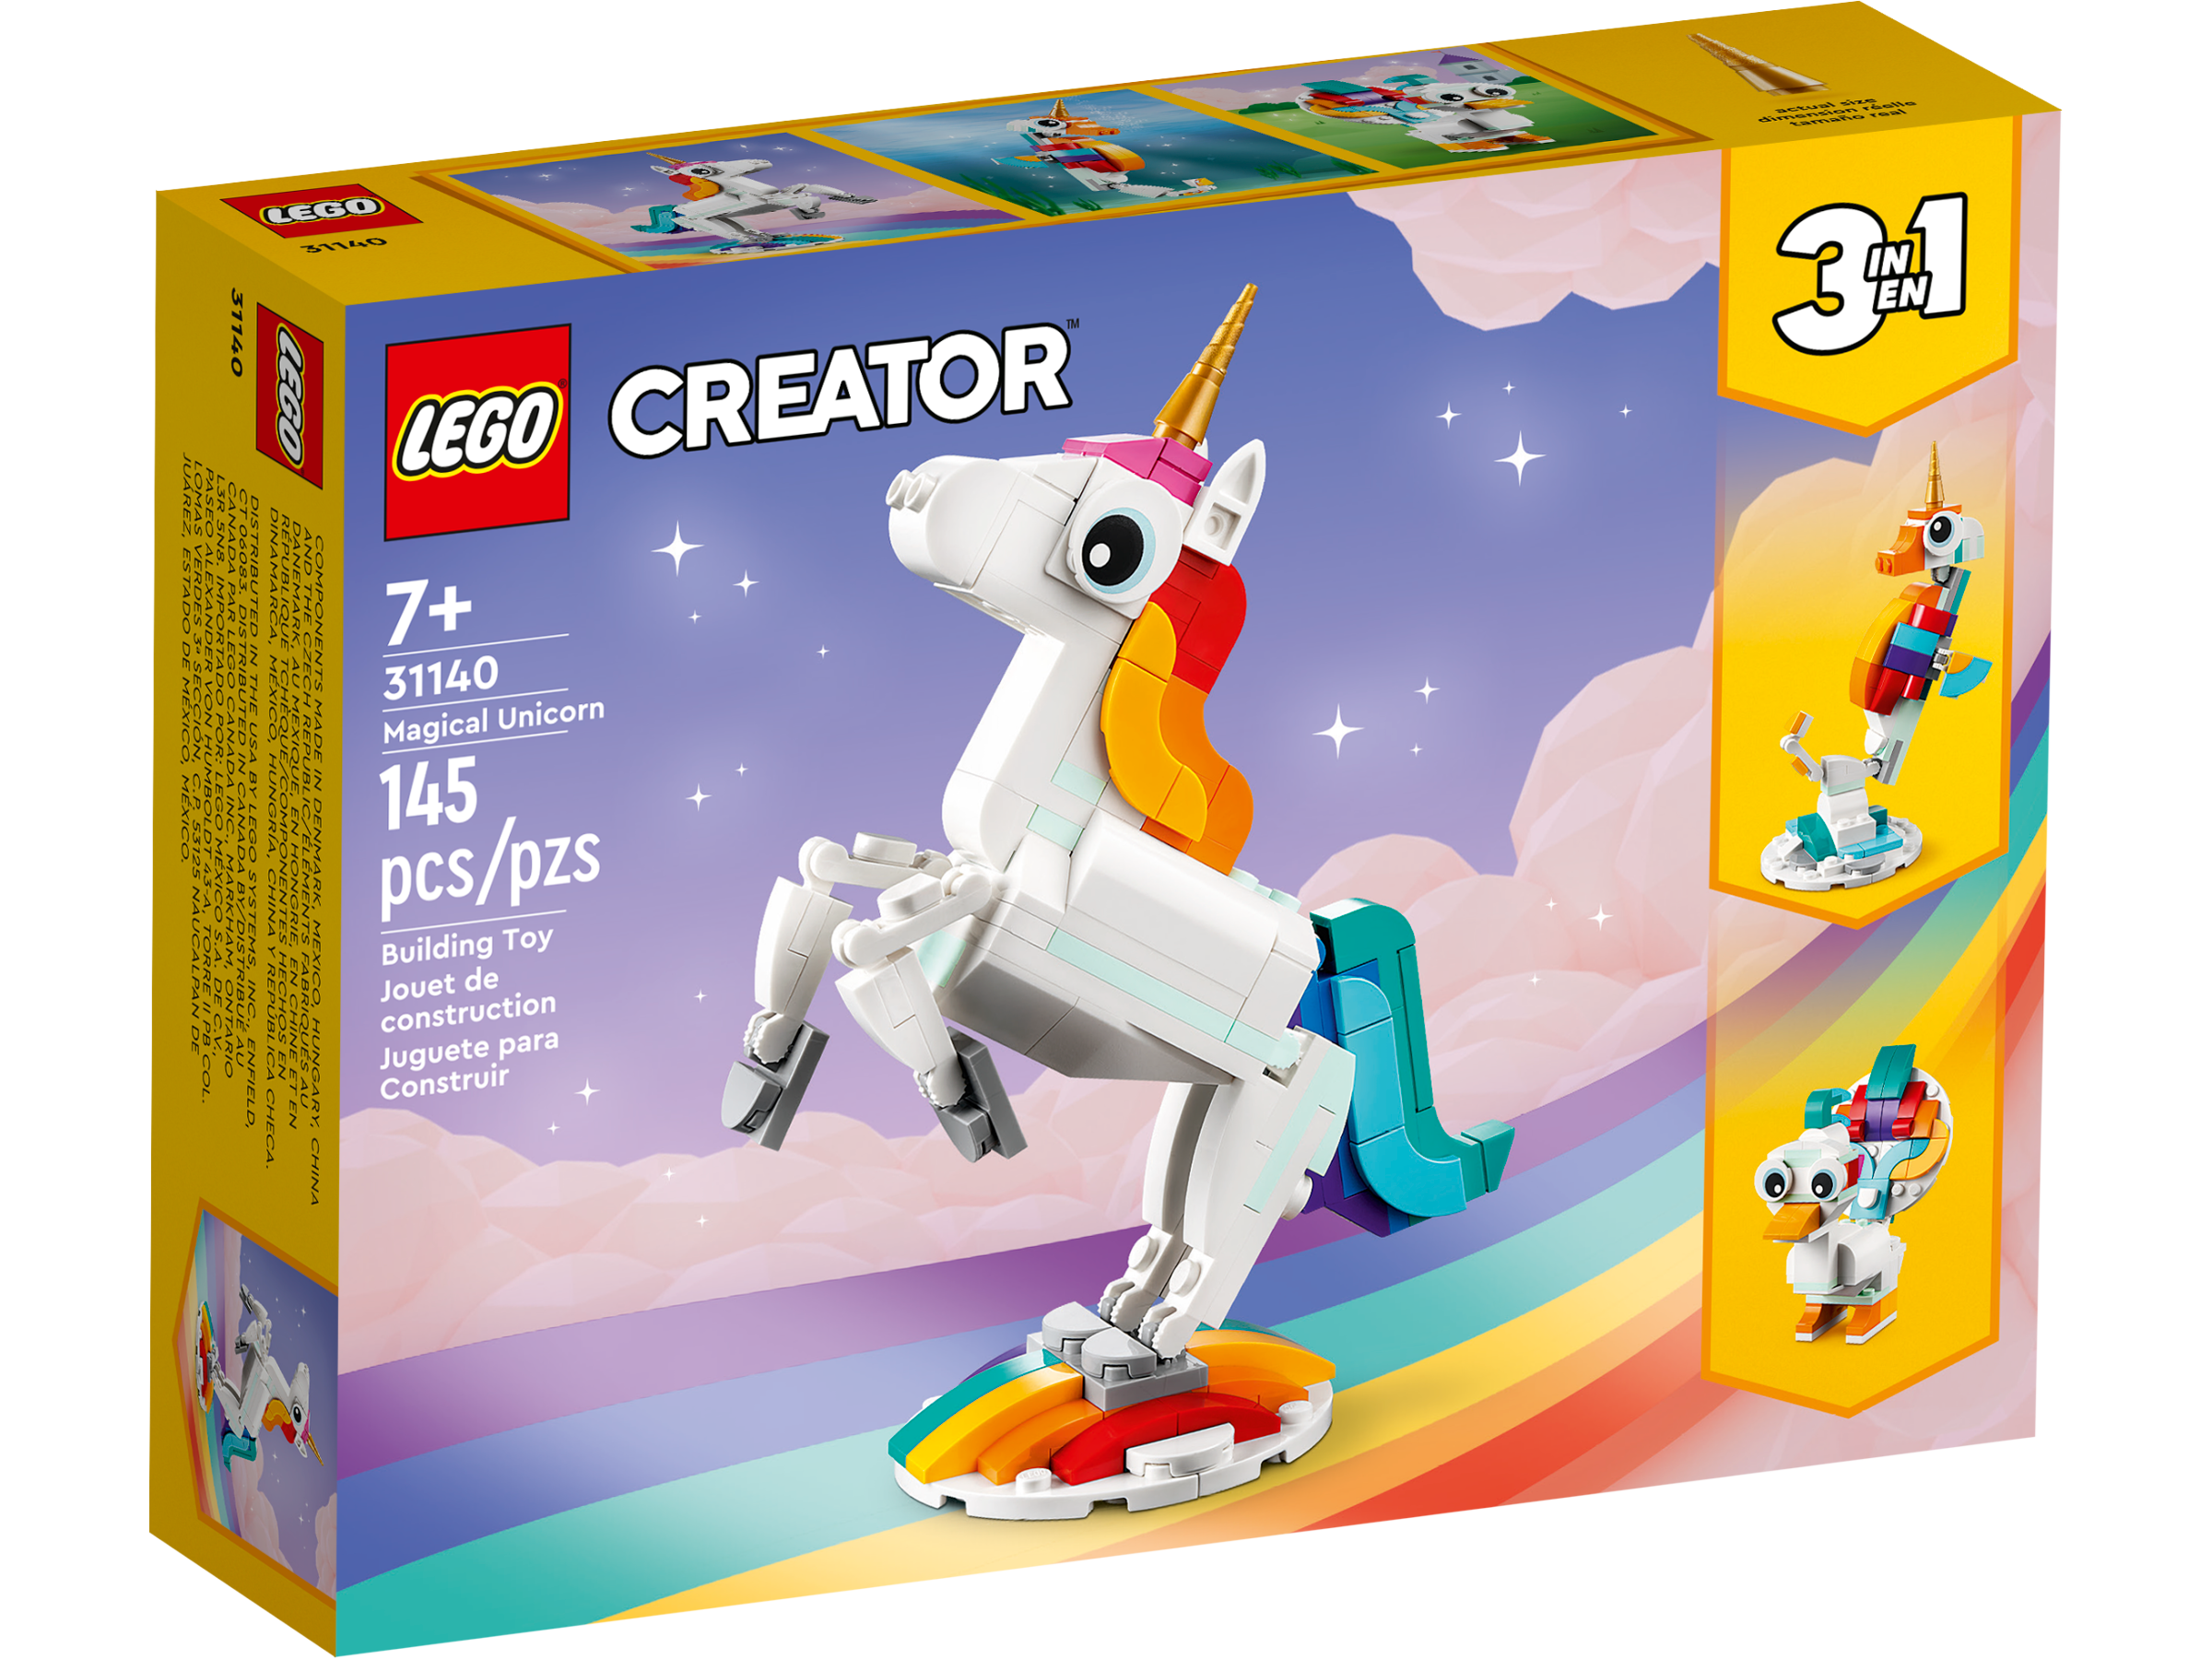 LEGO Unicorn Girl Set 71008-3